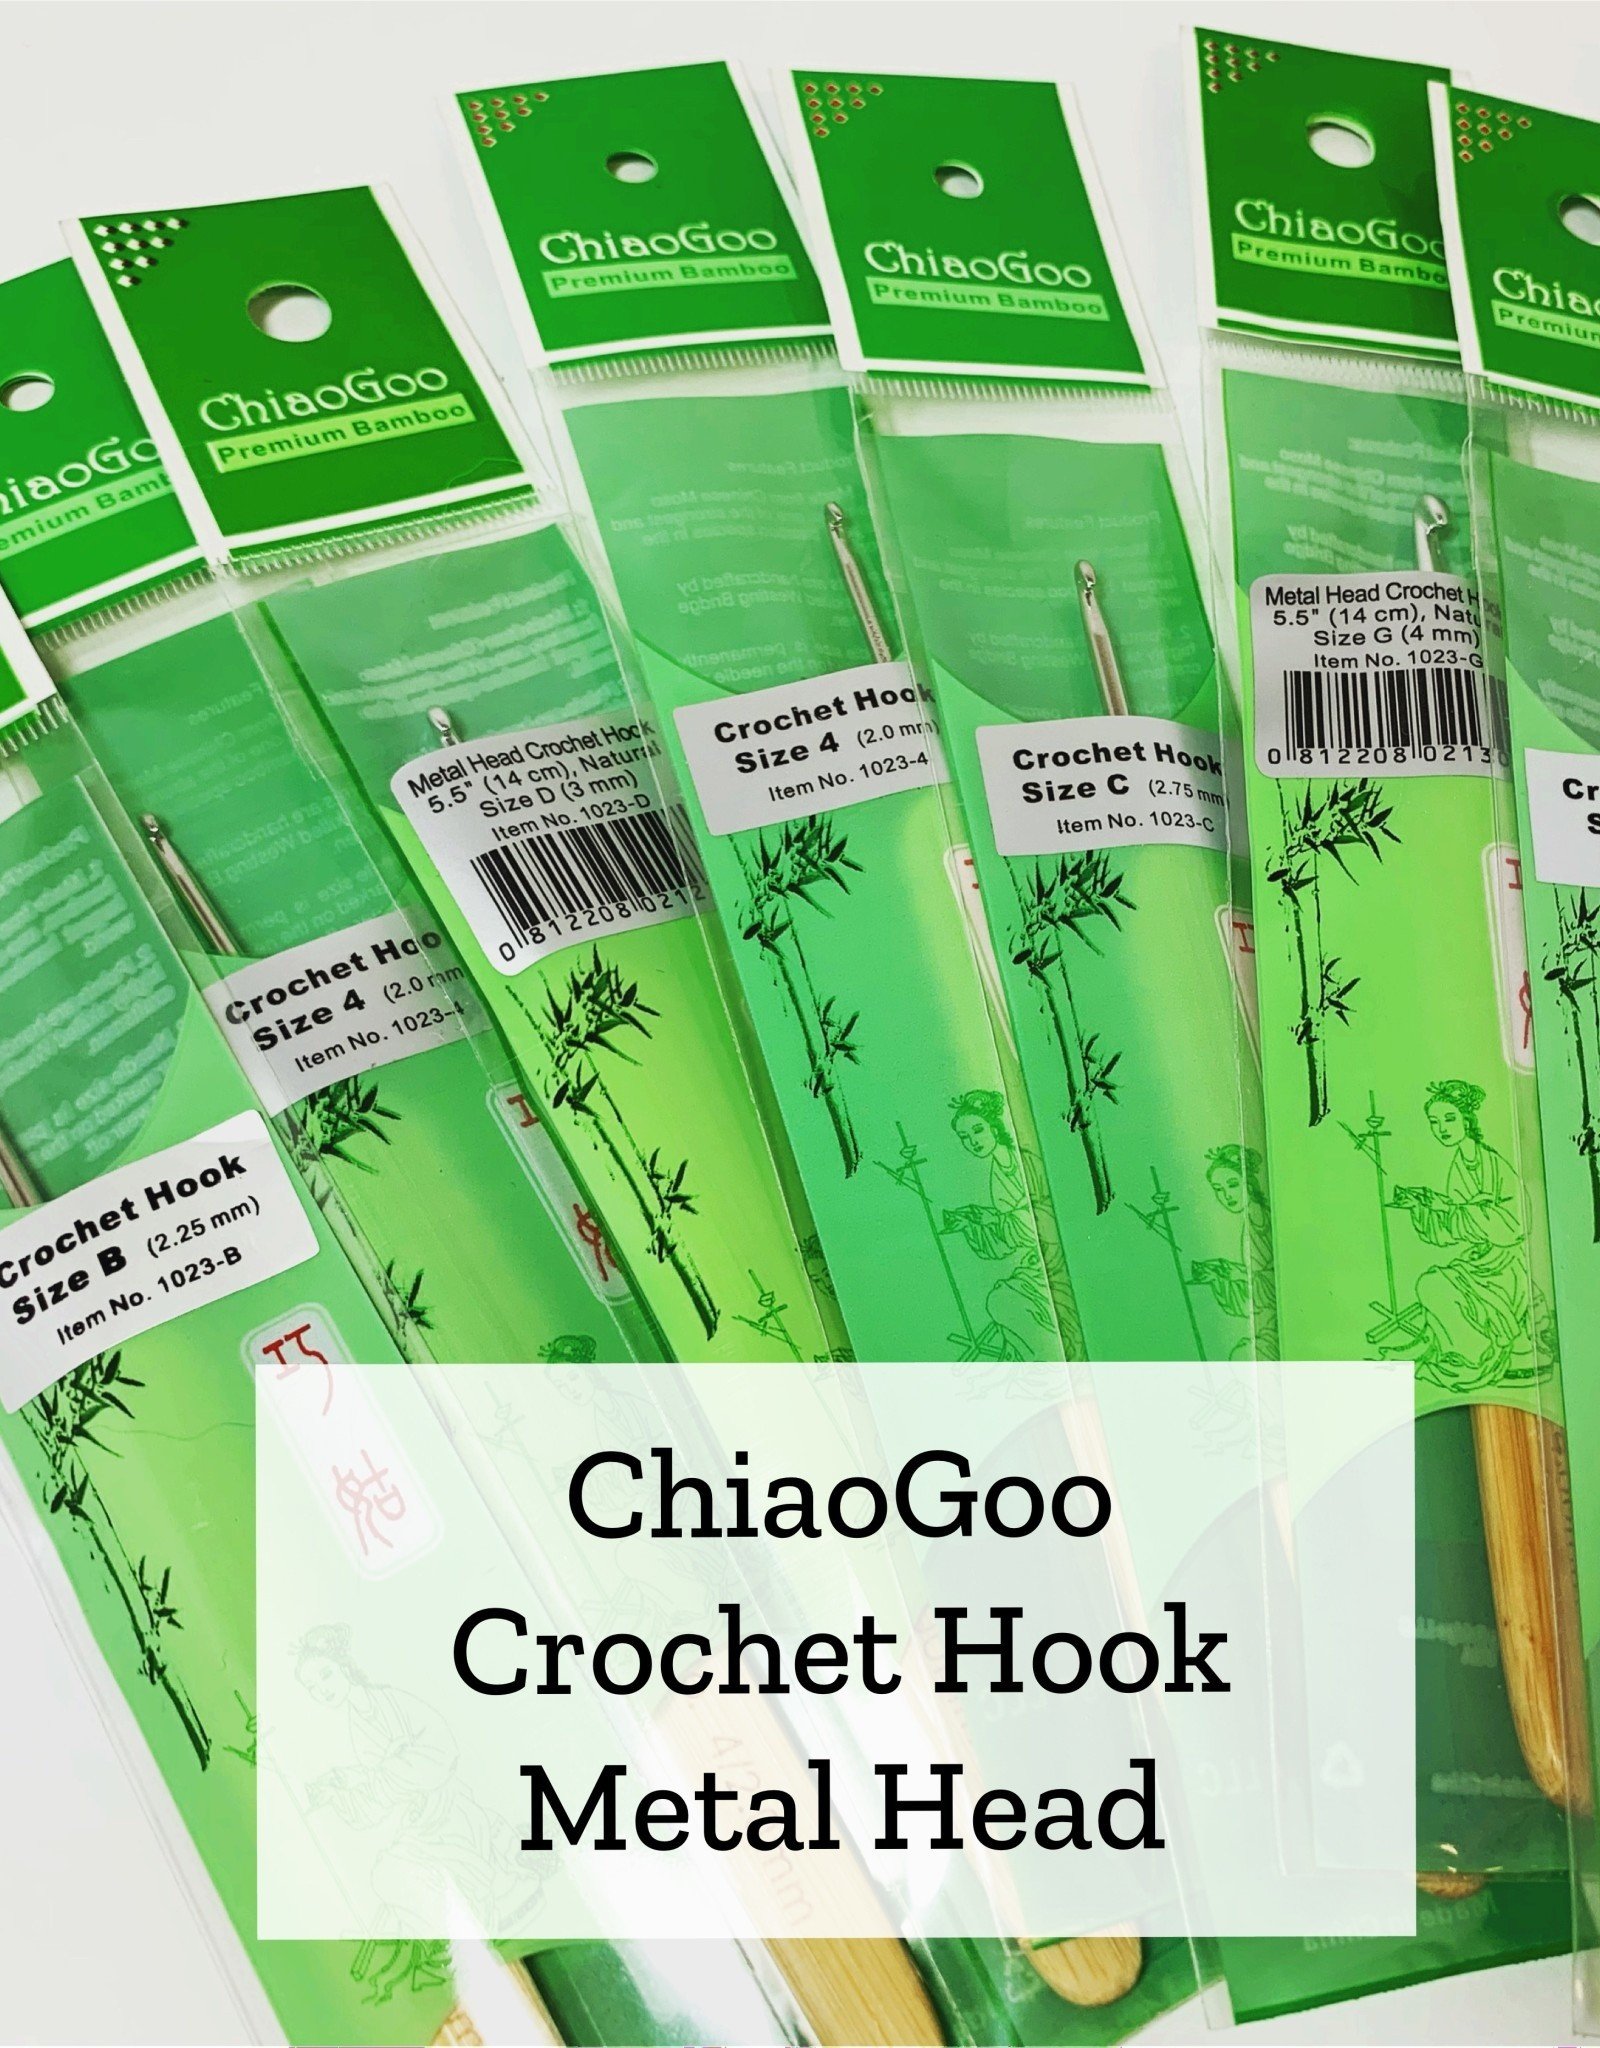 ChiaoGoo Metal Head Crochet - 3.5 mm